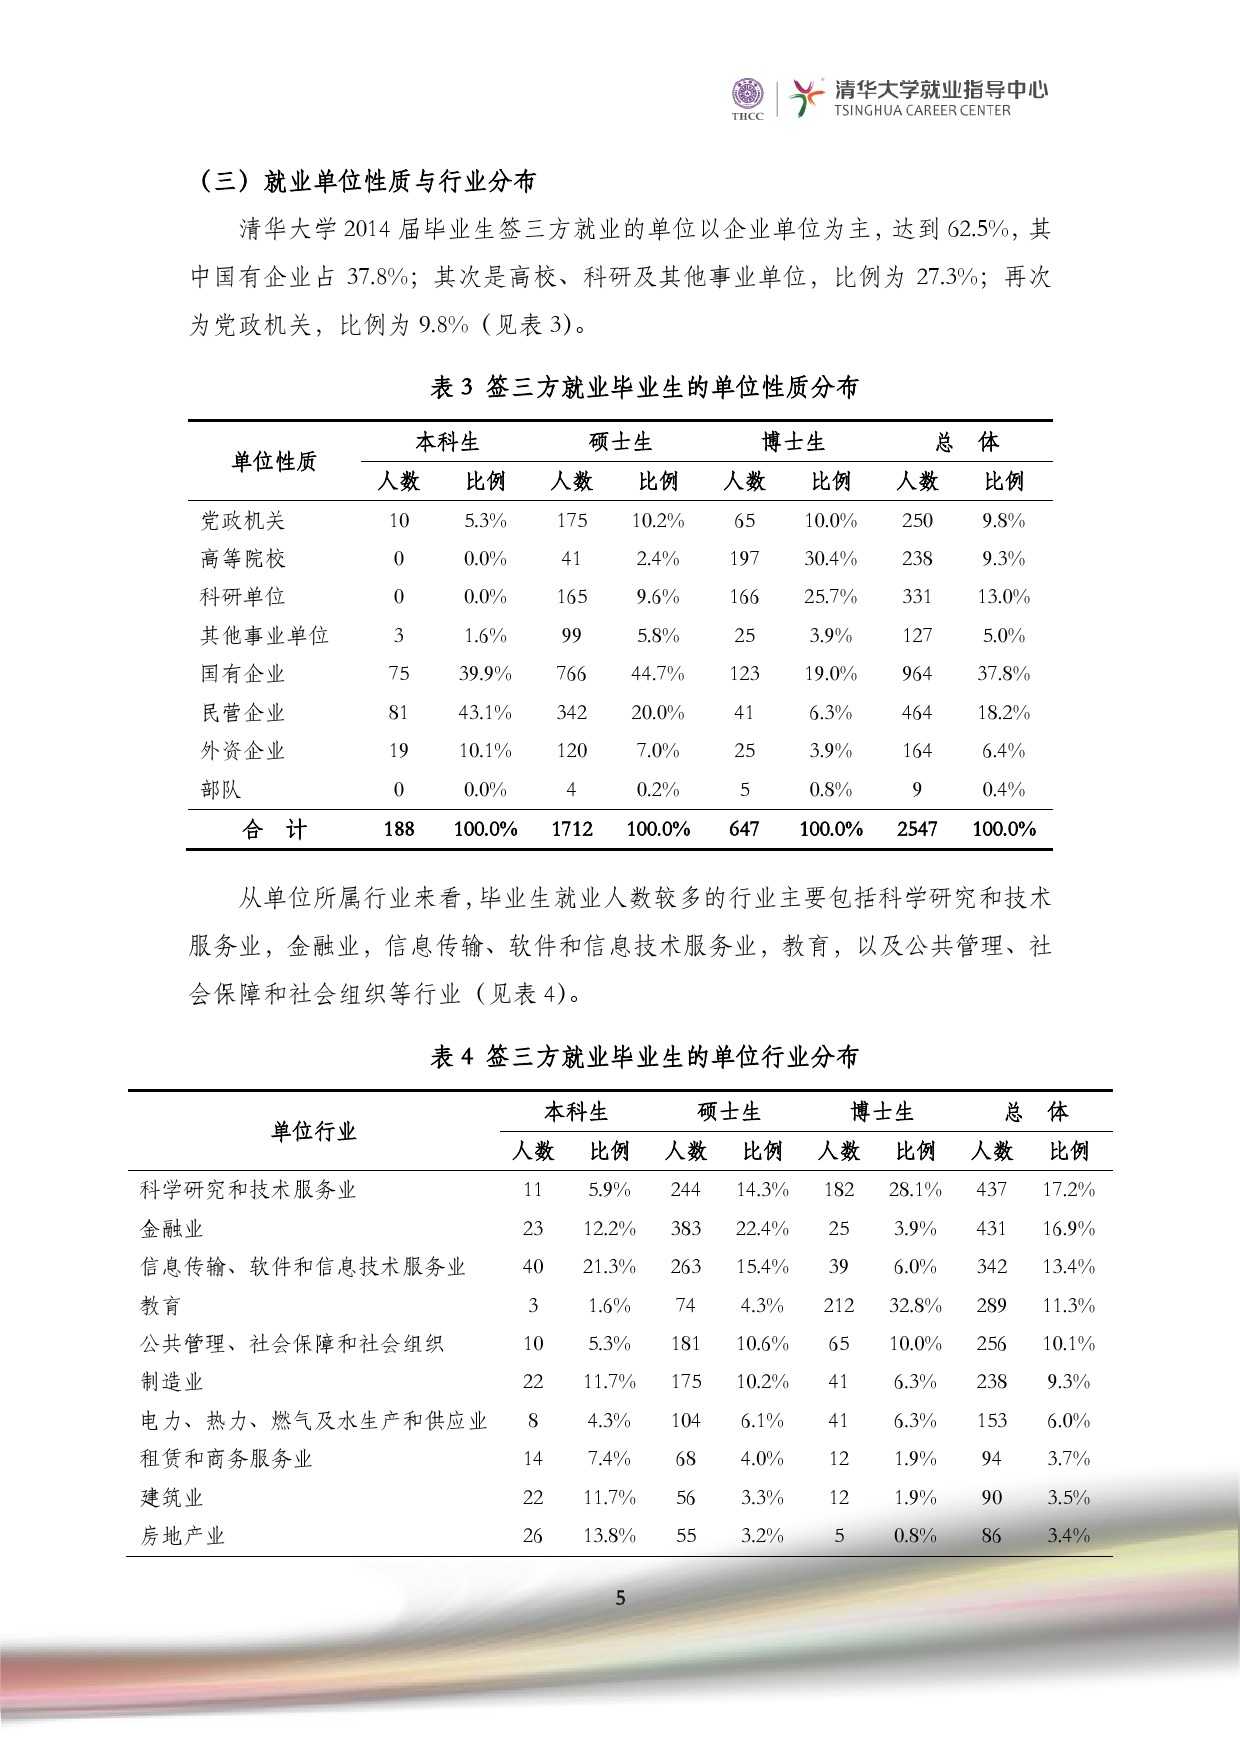 清華大學2014 年畢業生就業質量報告_000007